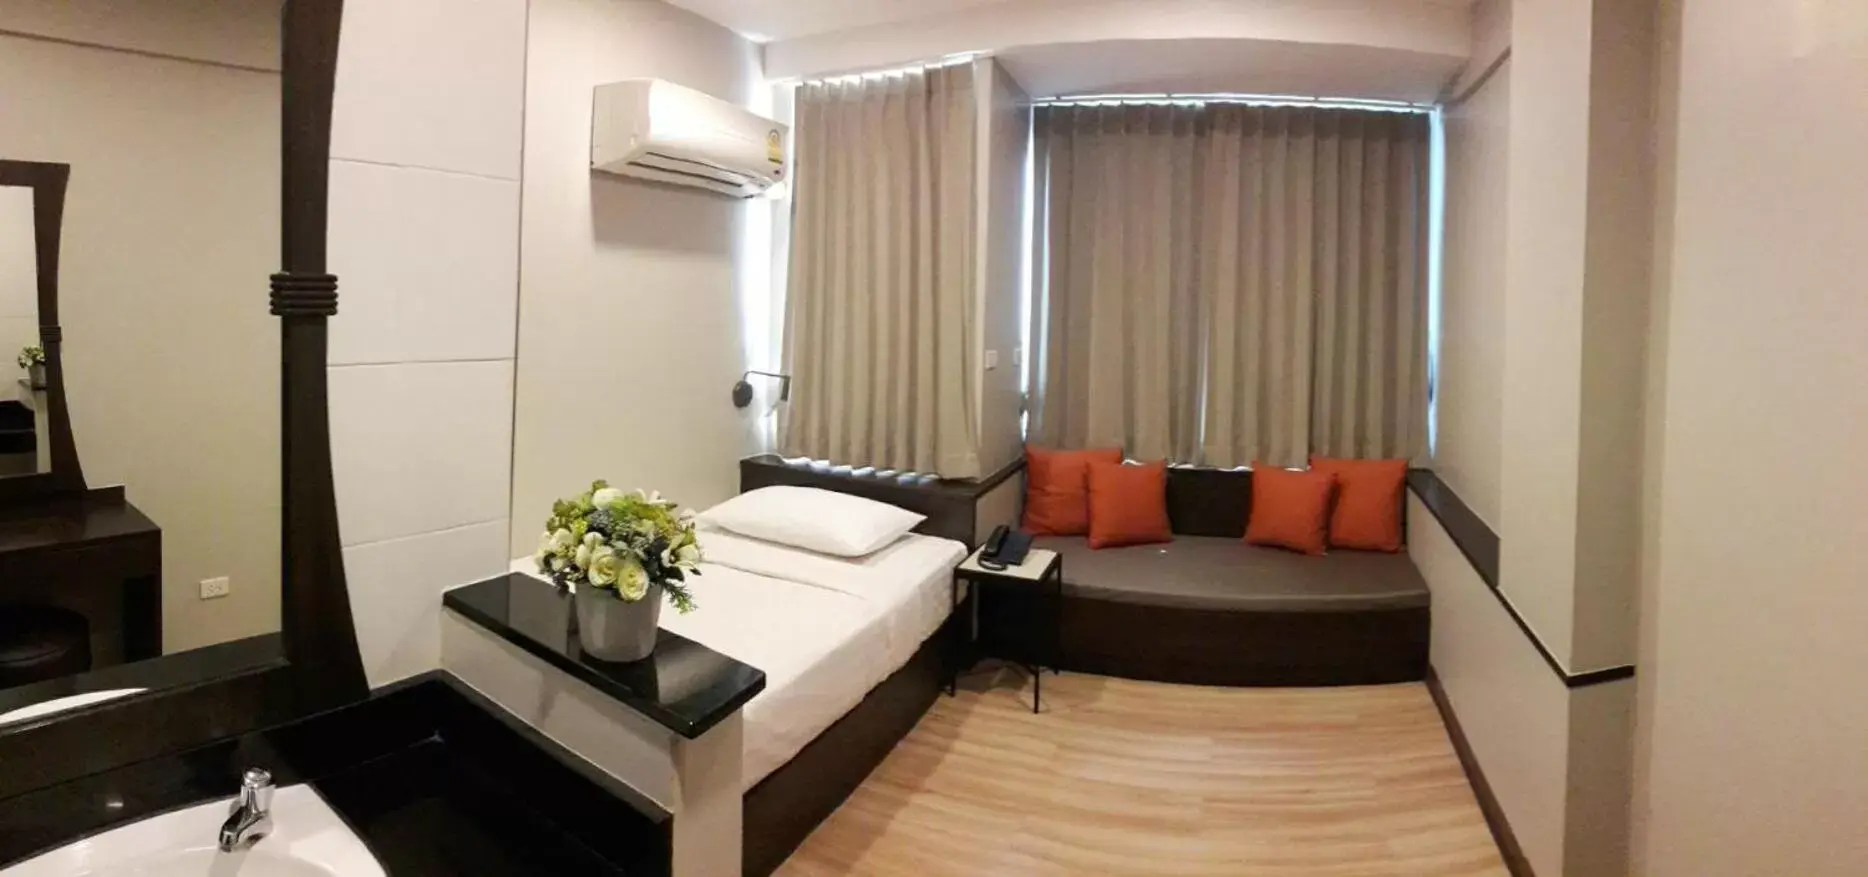 Seating Area in YWCA Hotel Bangkok